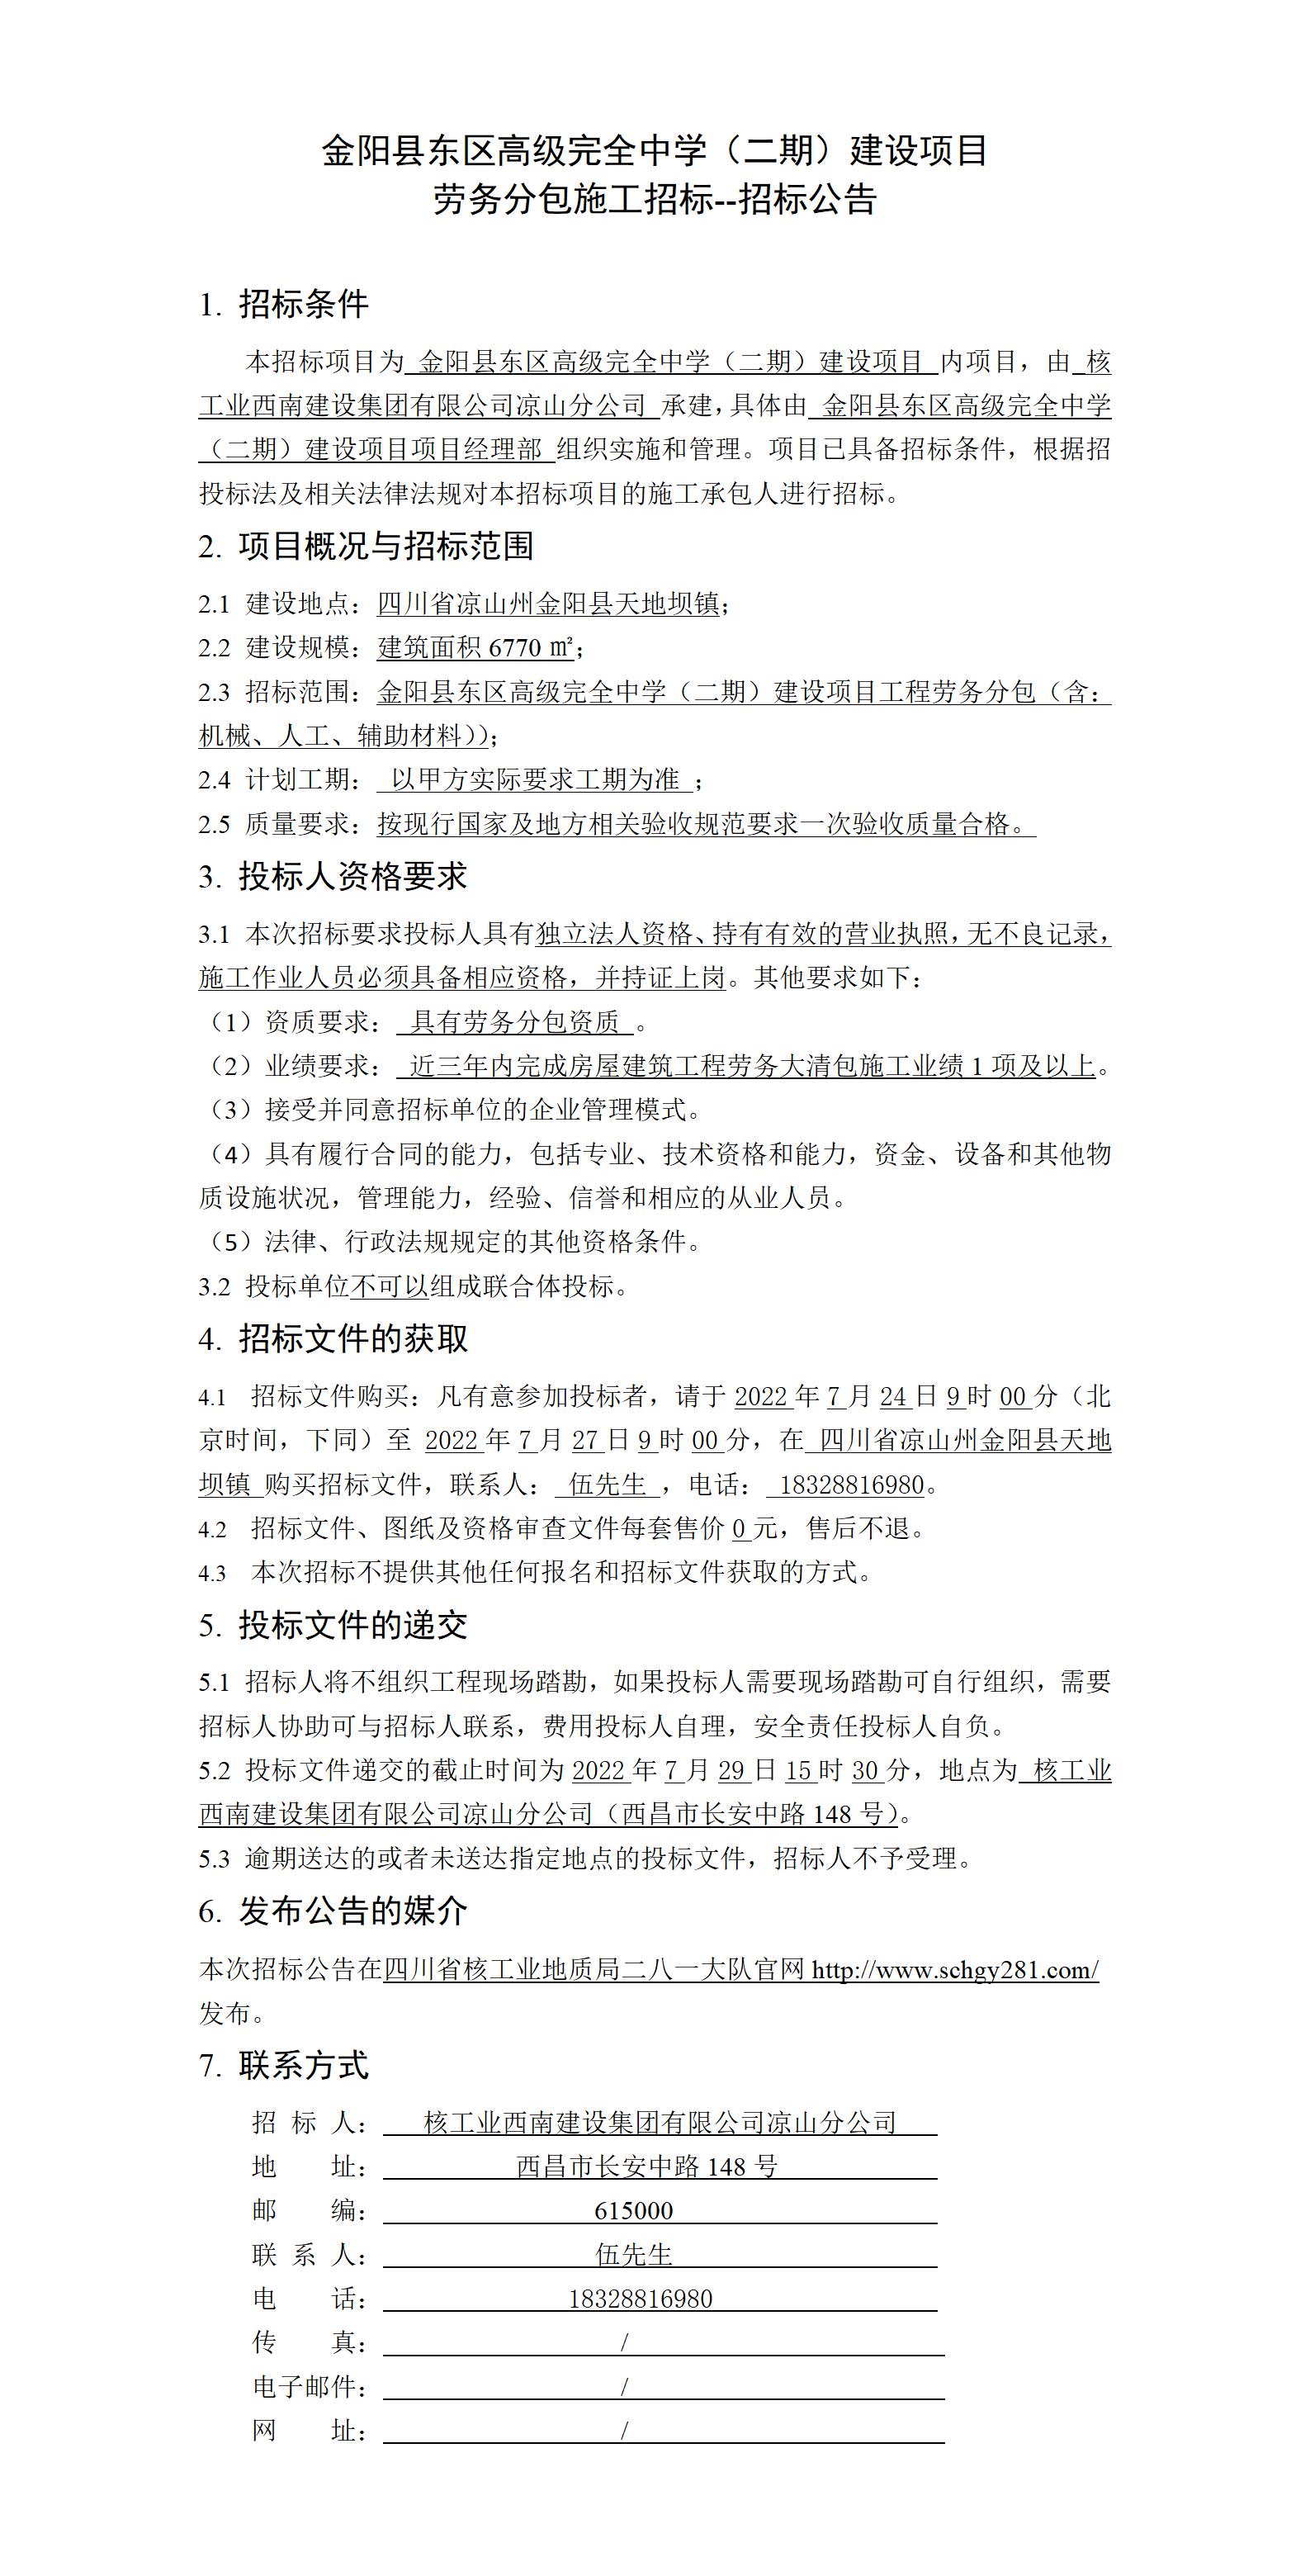 招标公告--金阳县东区高级完全中学（二期）建设项目劳务分包.jpg